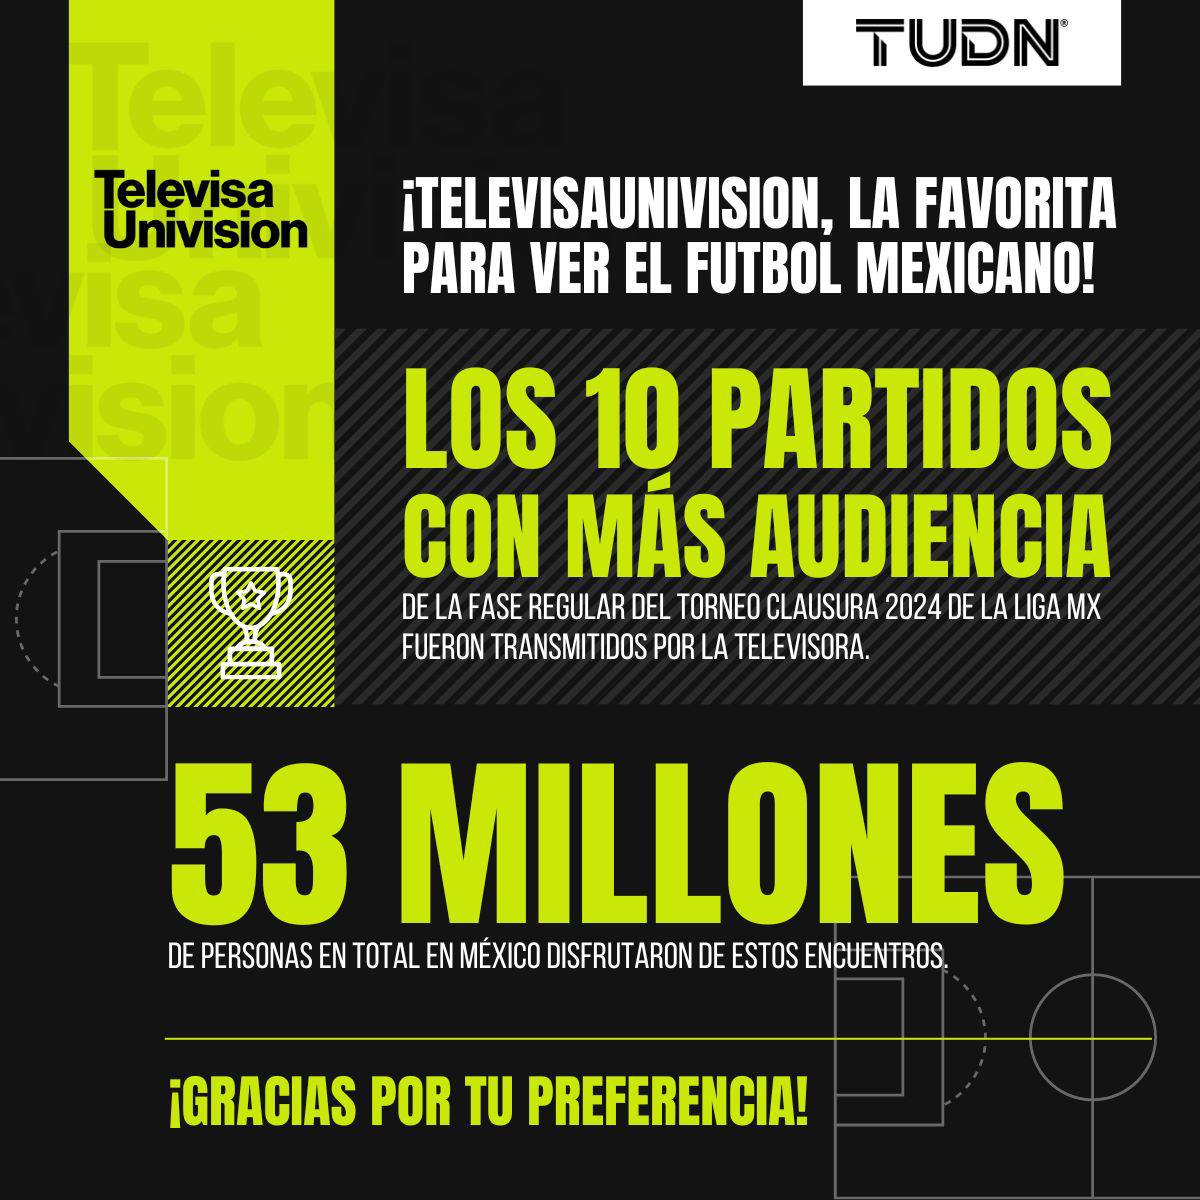 ⚽️🇲🇽 ¡Los partidos de #LigaMX con mayor audiencia en México del #Clausura2024 se disfrutaron por @TUDNMEX! Los 🔟 encuentros top de la fase regular se transmitieron por #TelevisaUnivision. ¡Gracias por tu preferencia, nos vemos en la Liguilla!🙏🙌🏻